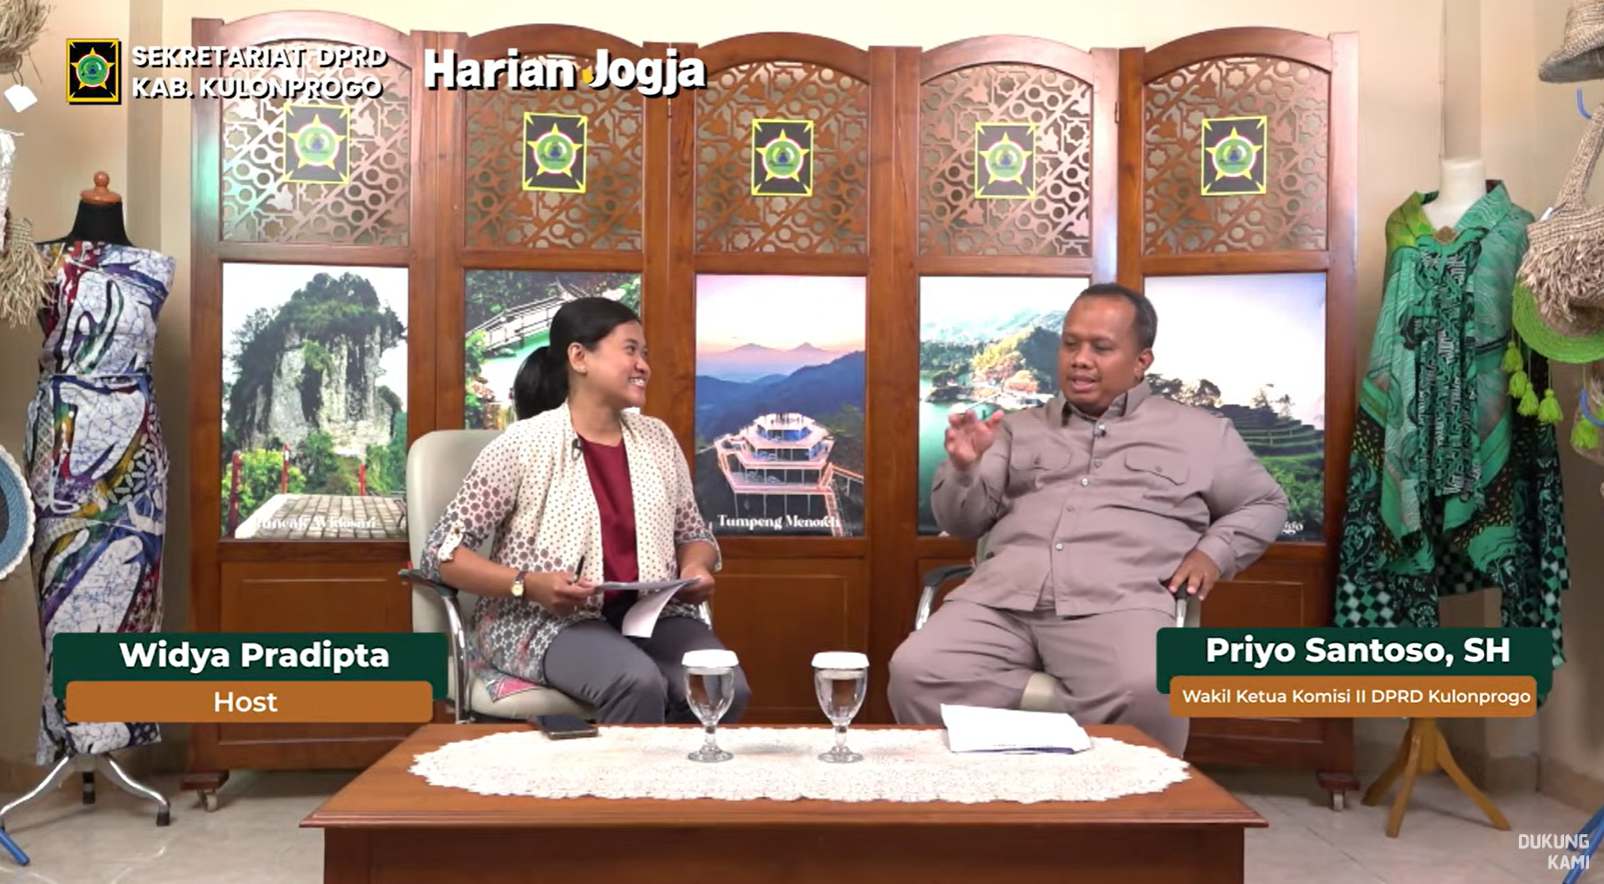 Podcast Komisi II DPRD Kulonprogo - “Kebijakan Pengembangan Pertanian Holtikultura di Kulonprogo”